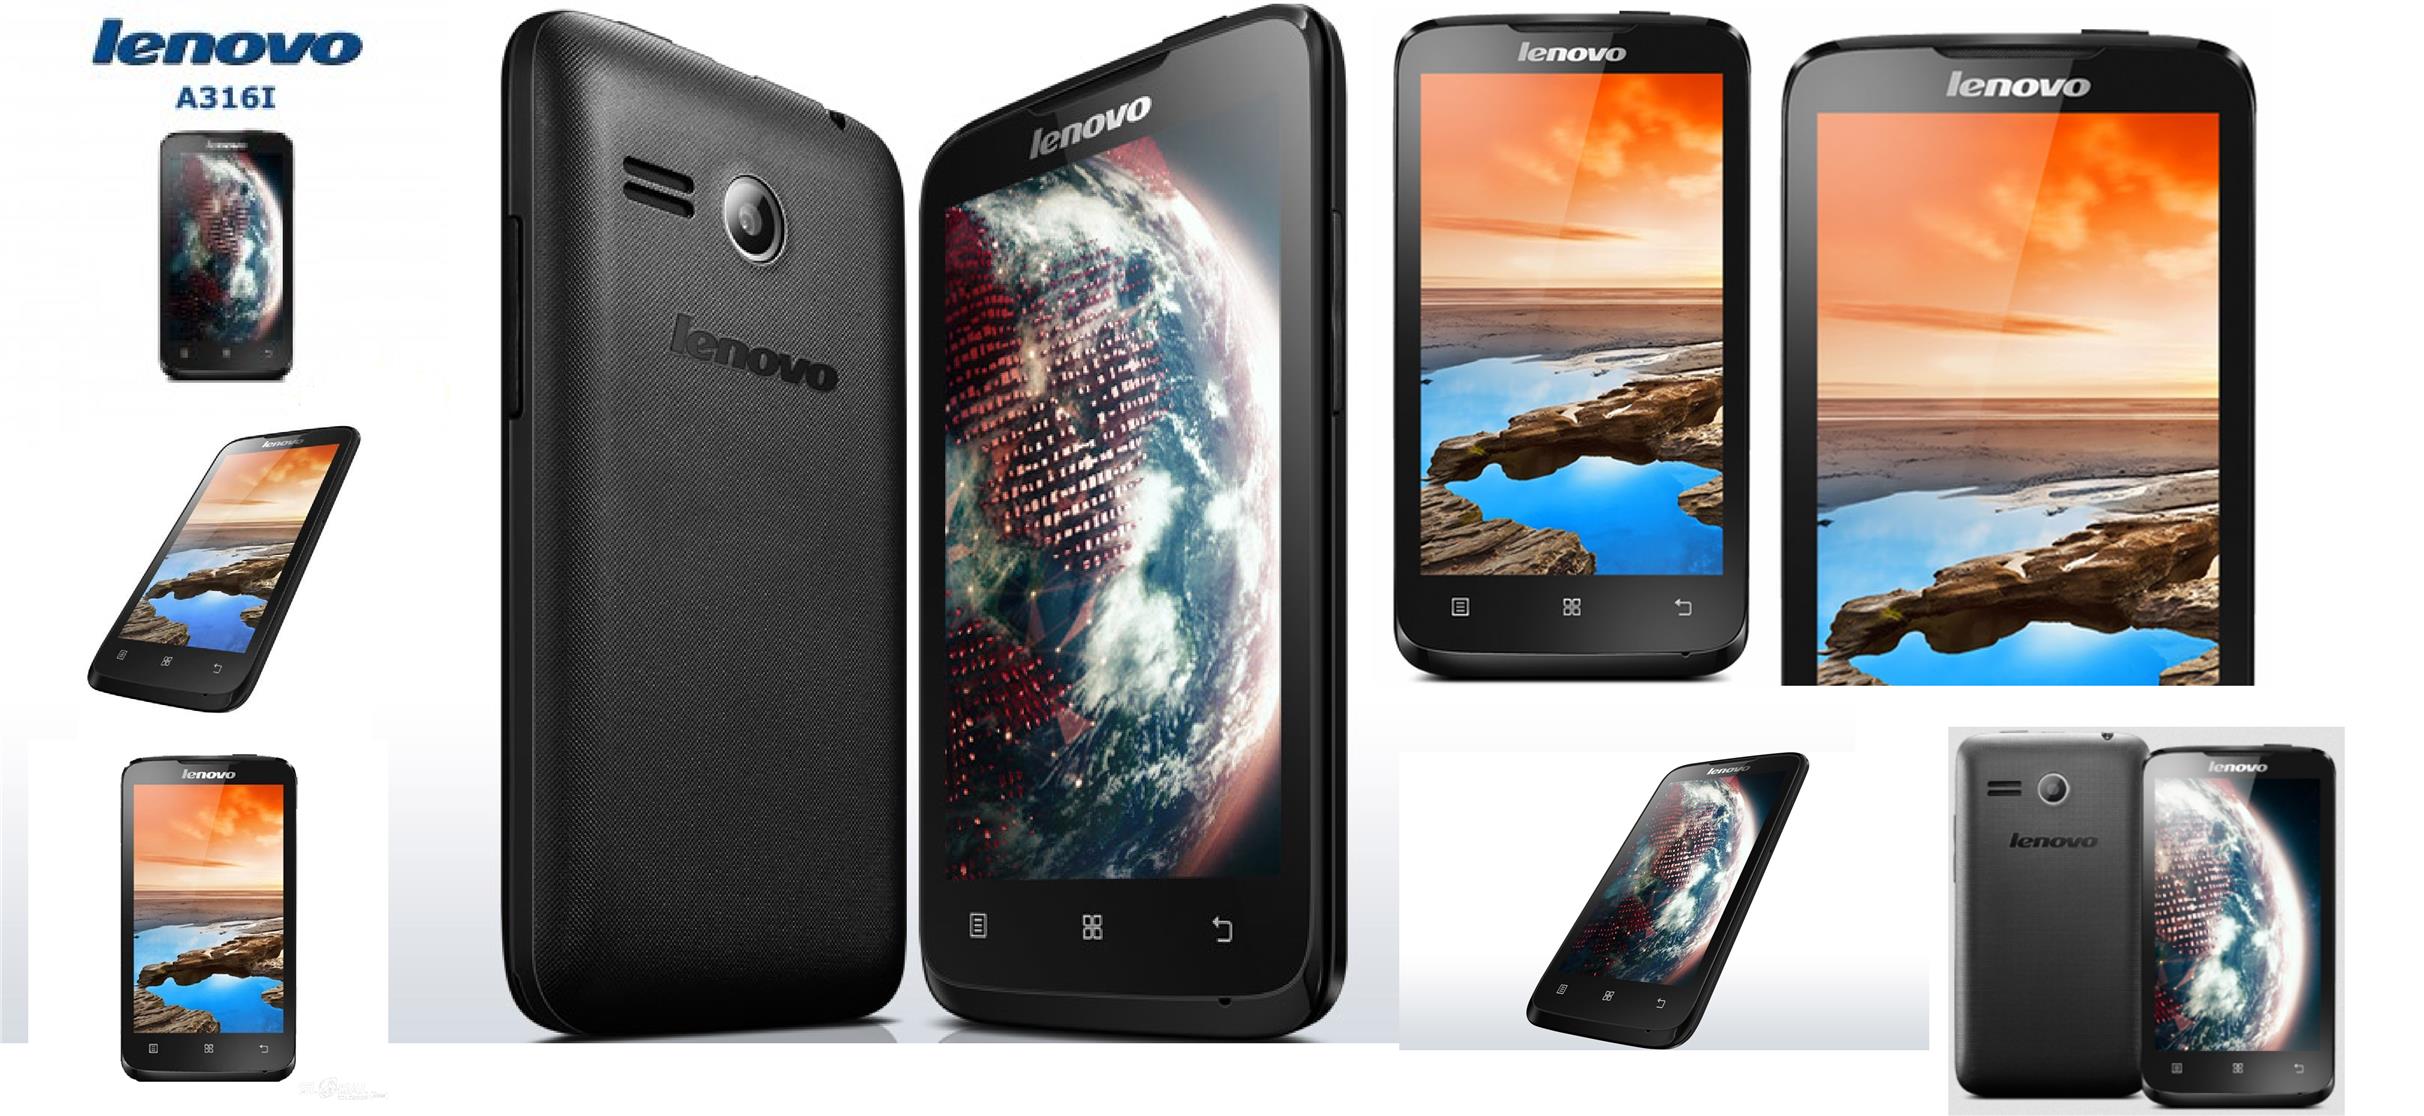 Mua smartphone giá rẻ Lenovo A316i với thiết kế chắc chắn và sang trọng